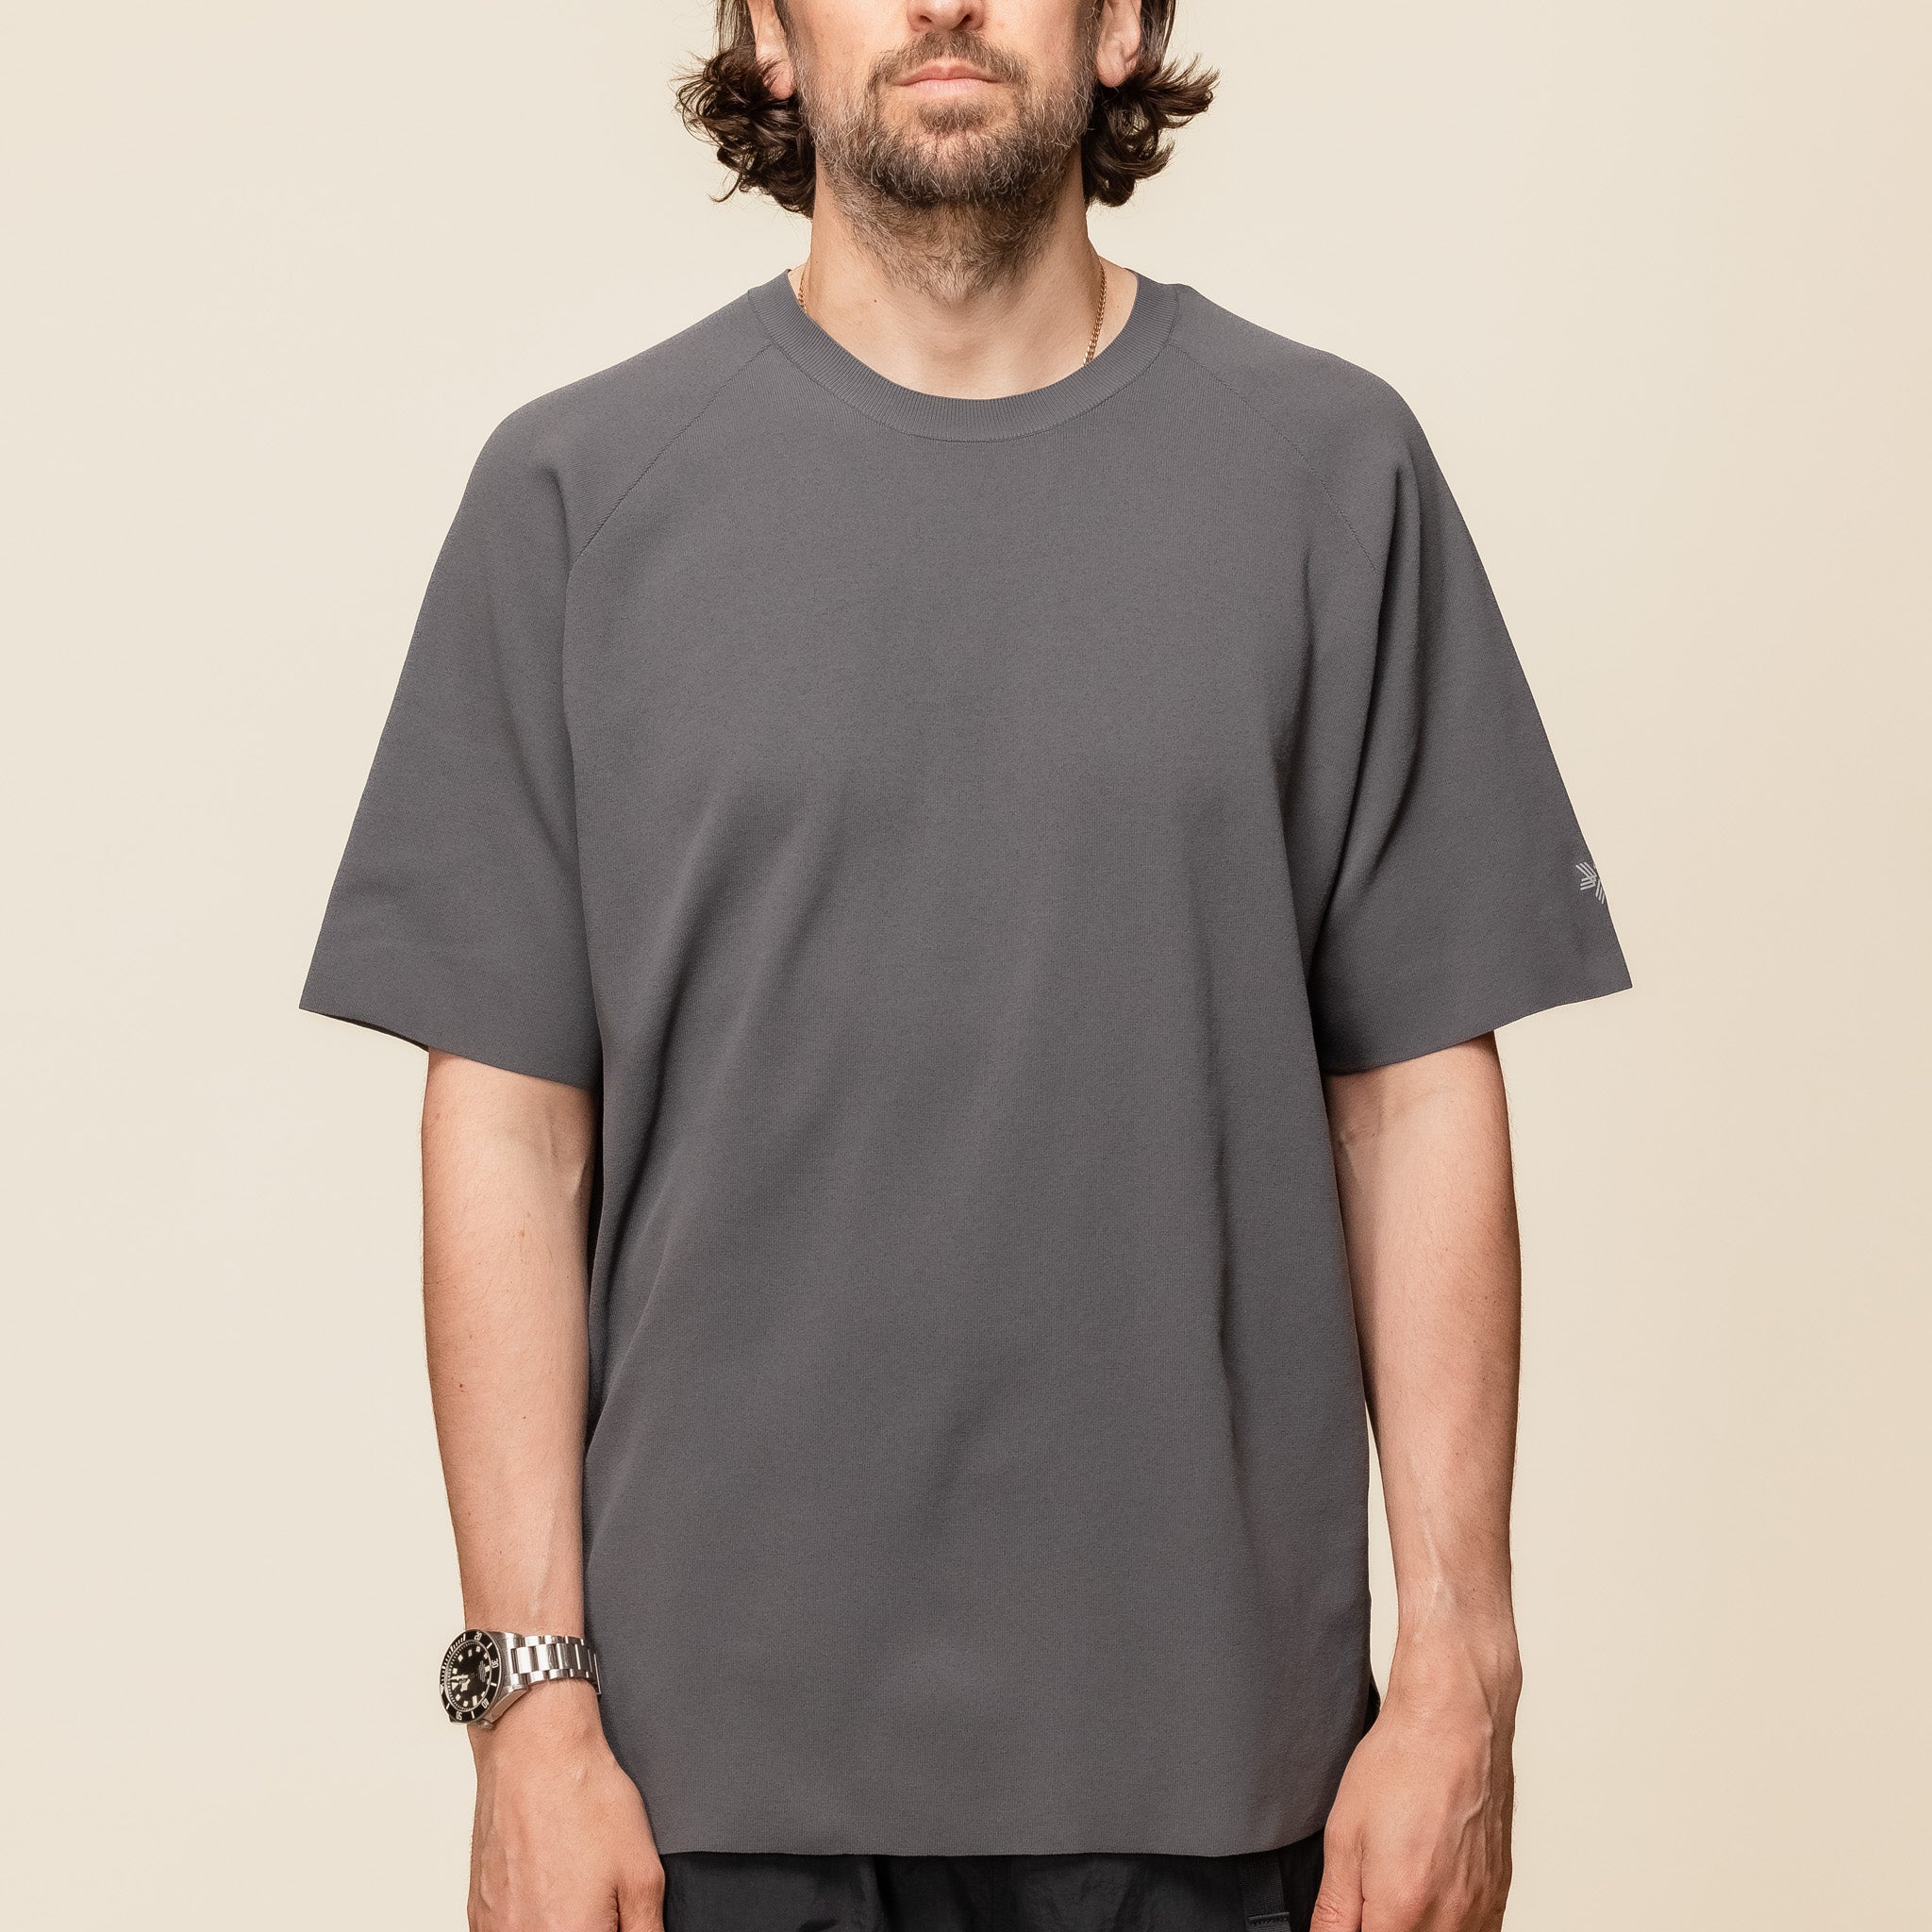 Goldwin - Smooth Dry Knit T-Shirt - Deep Charcoal GA64120 "Goldwin official website"